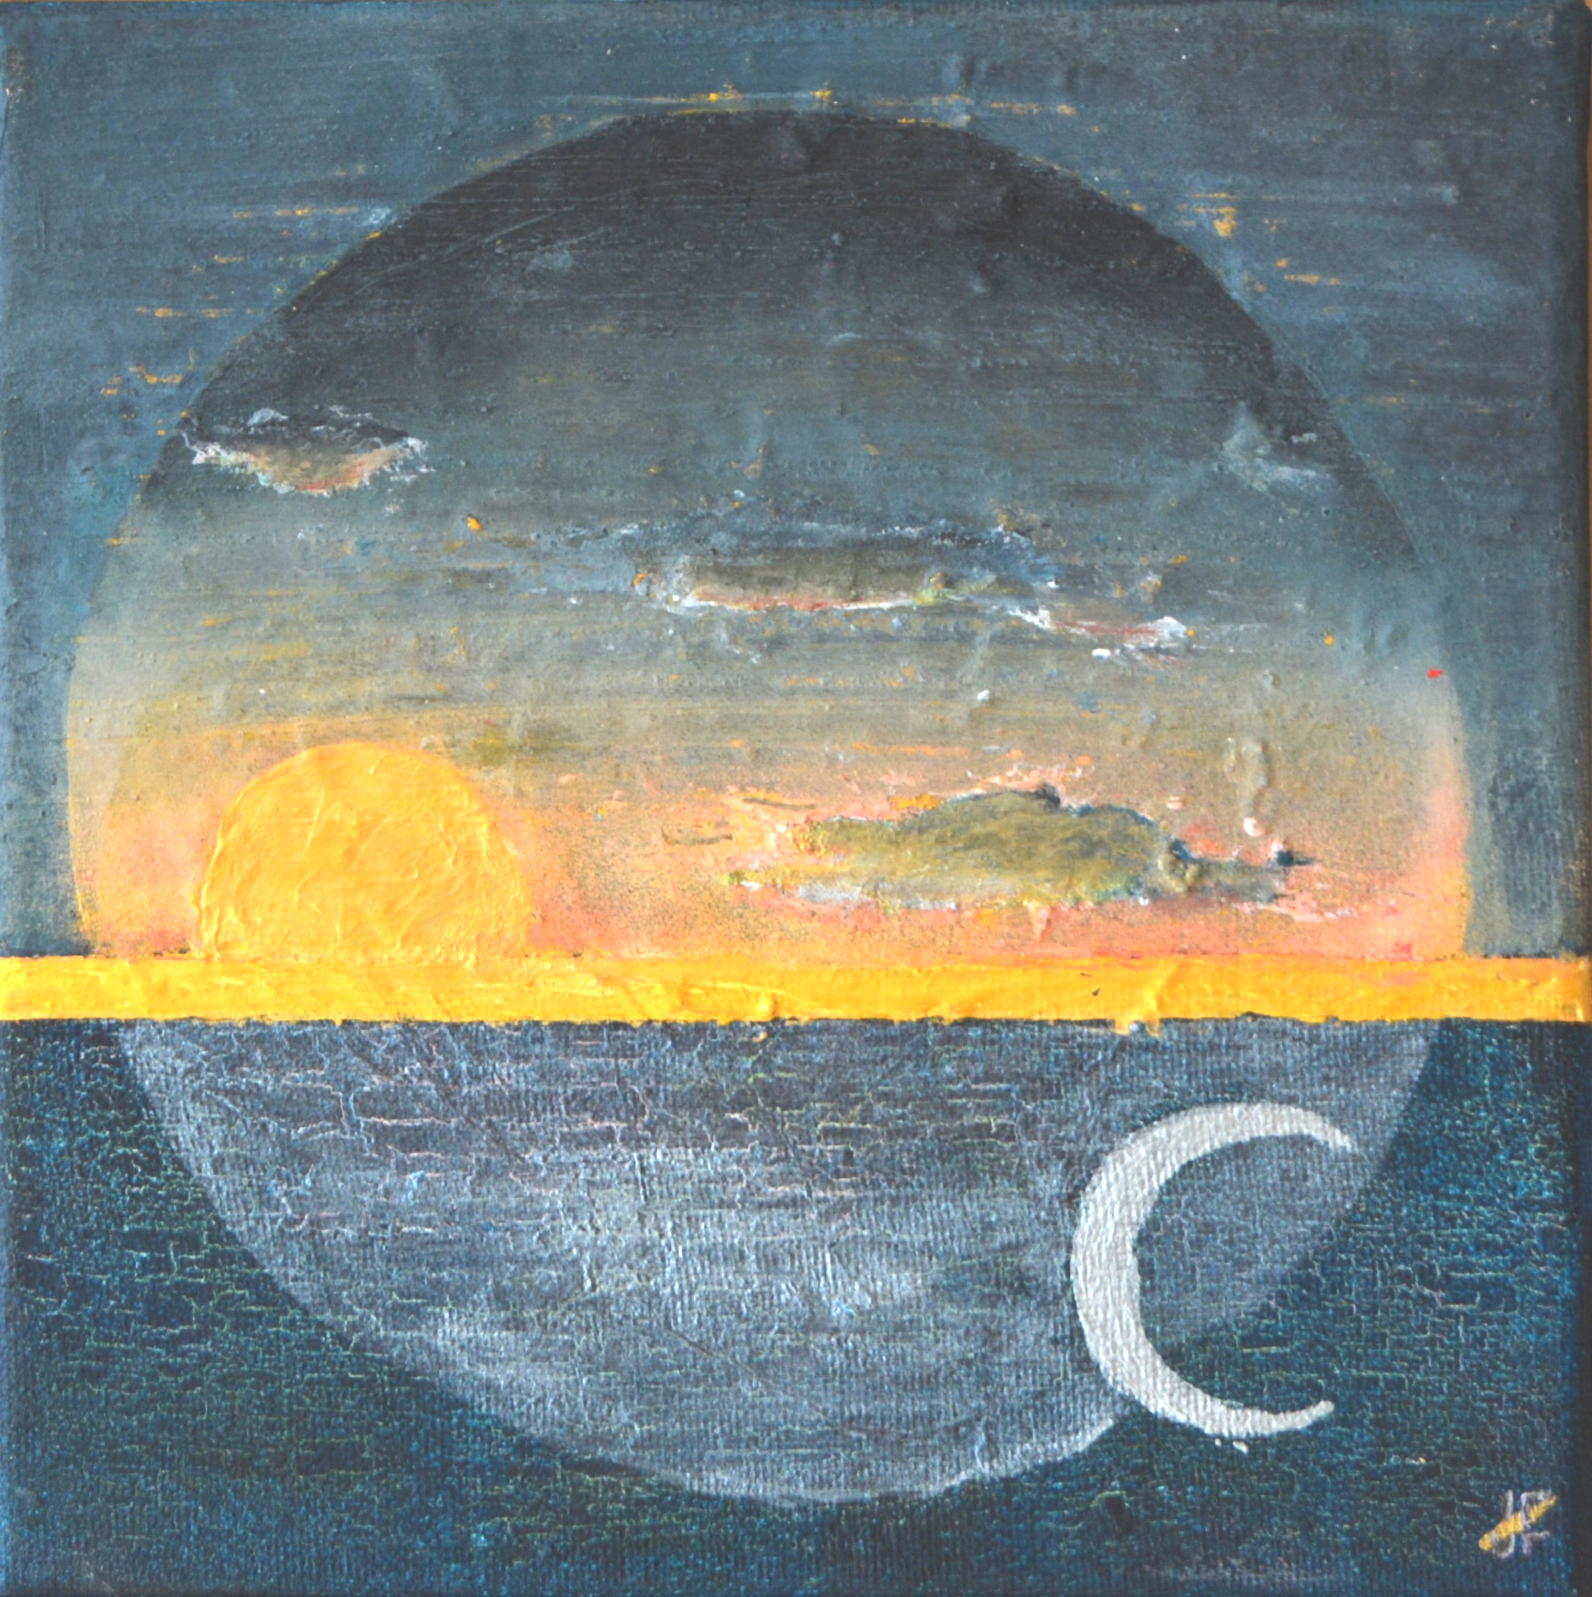 MUNTER UND MÜDE - Acryl auf Leinwand - 20x20cm - Abstrahiert zeigt dieses minimalistische Bild Sonne und Mond im ewigen Wechsel.